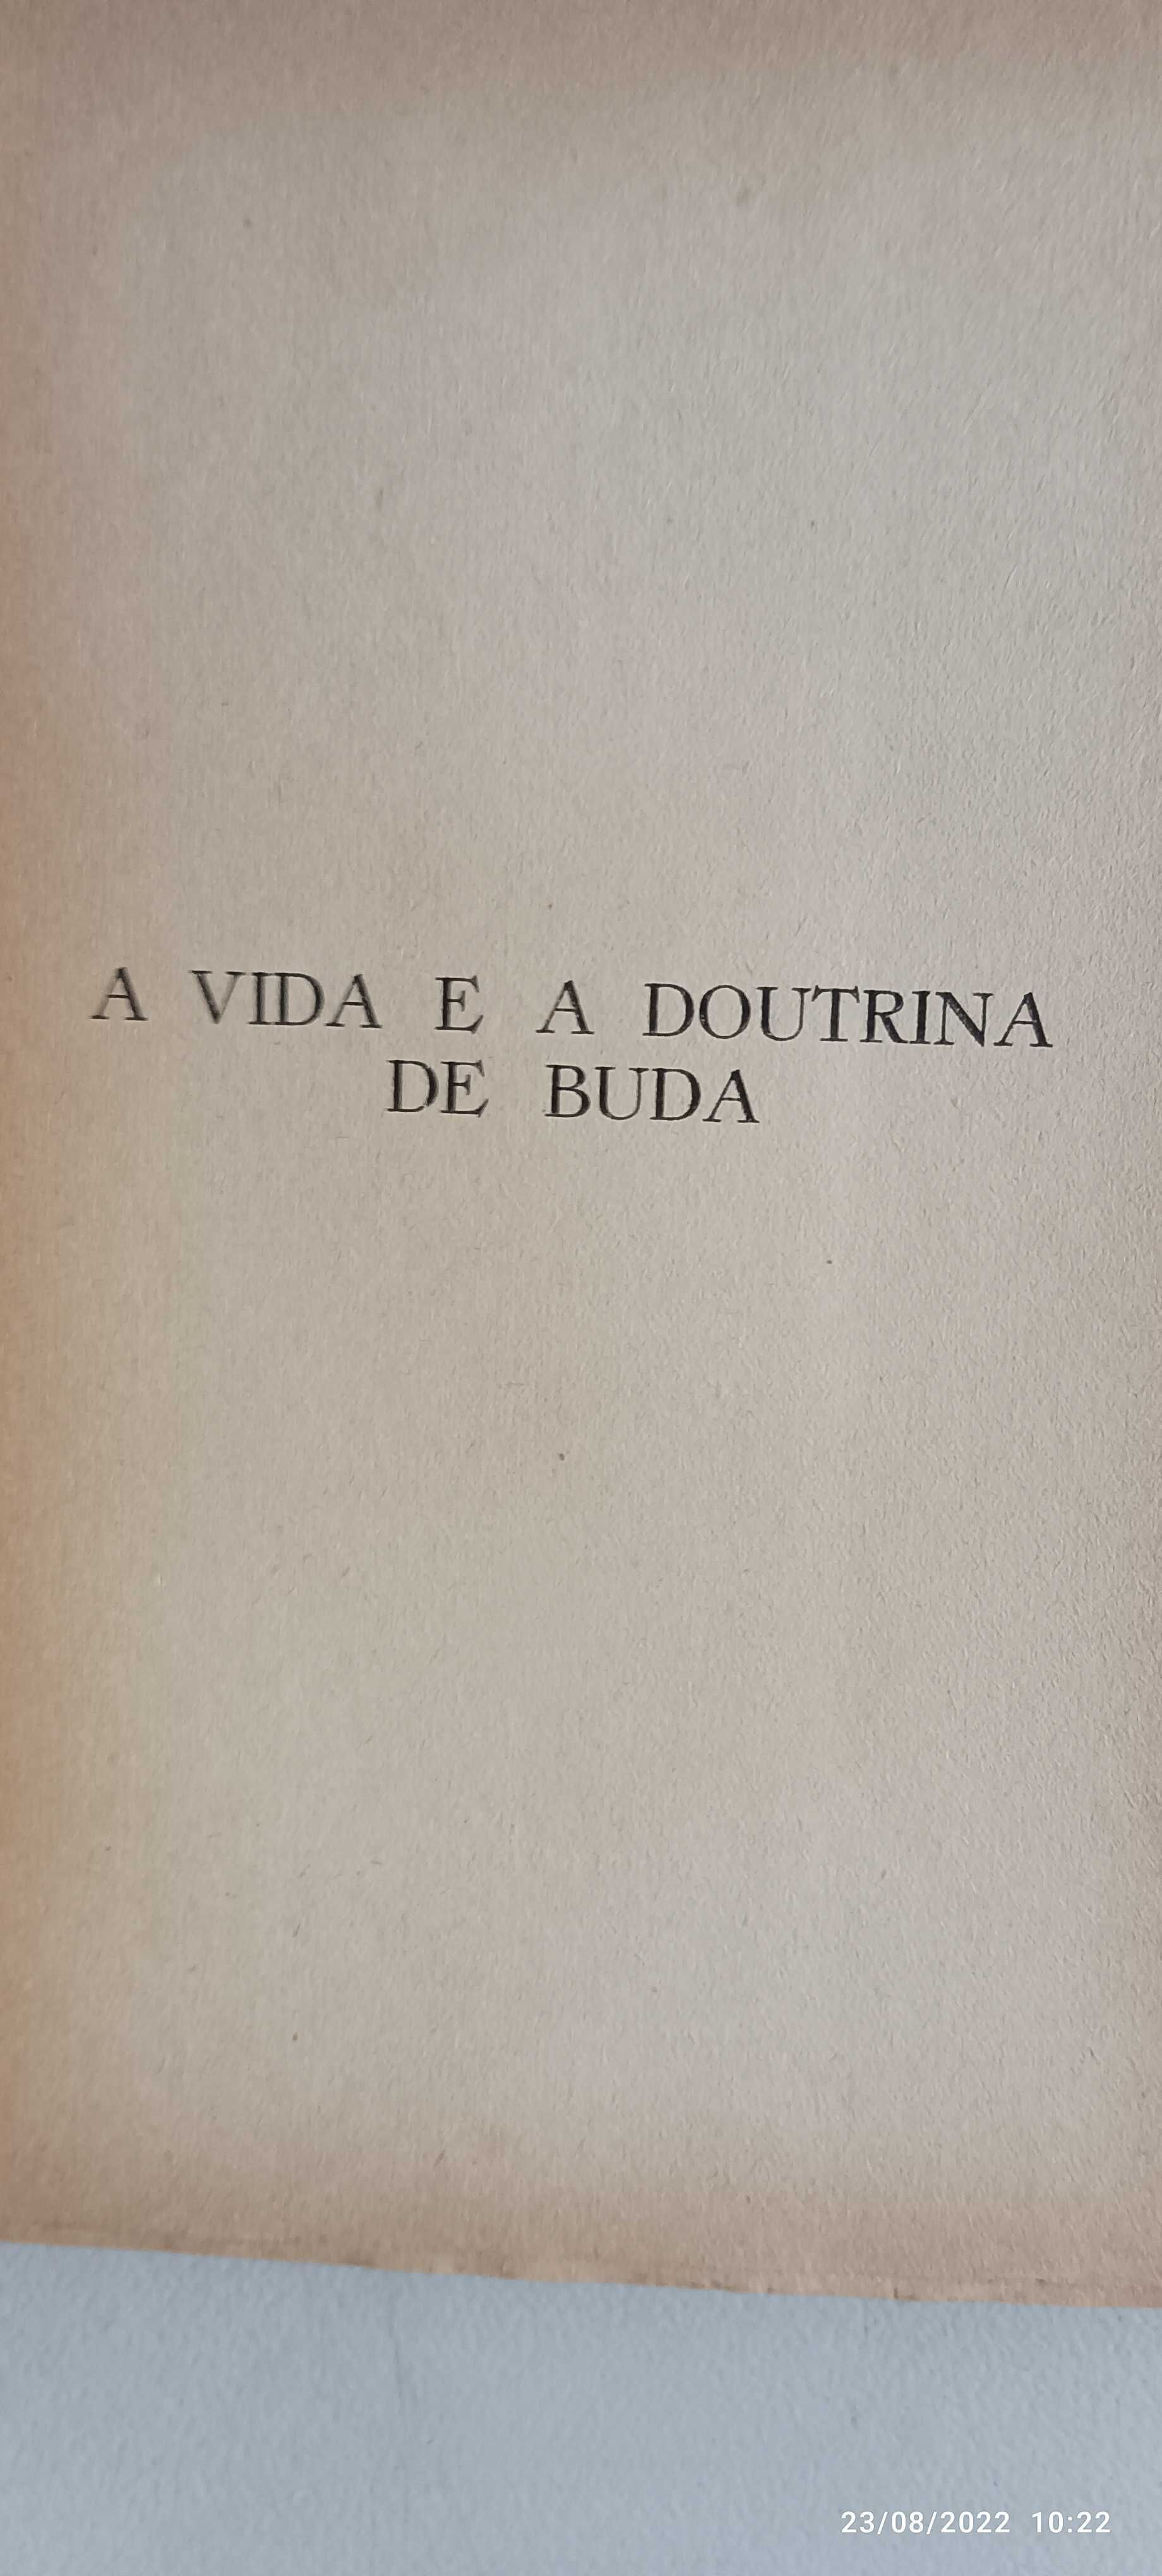 Livro Pa 3 - Rod. V. Delius  - A vida e a Doutrina de Buda